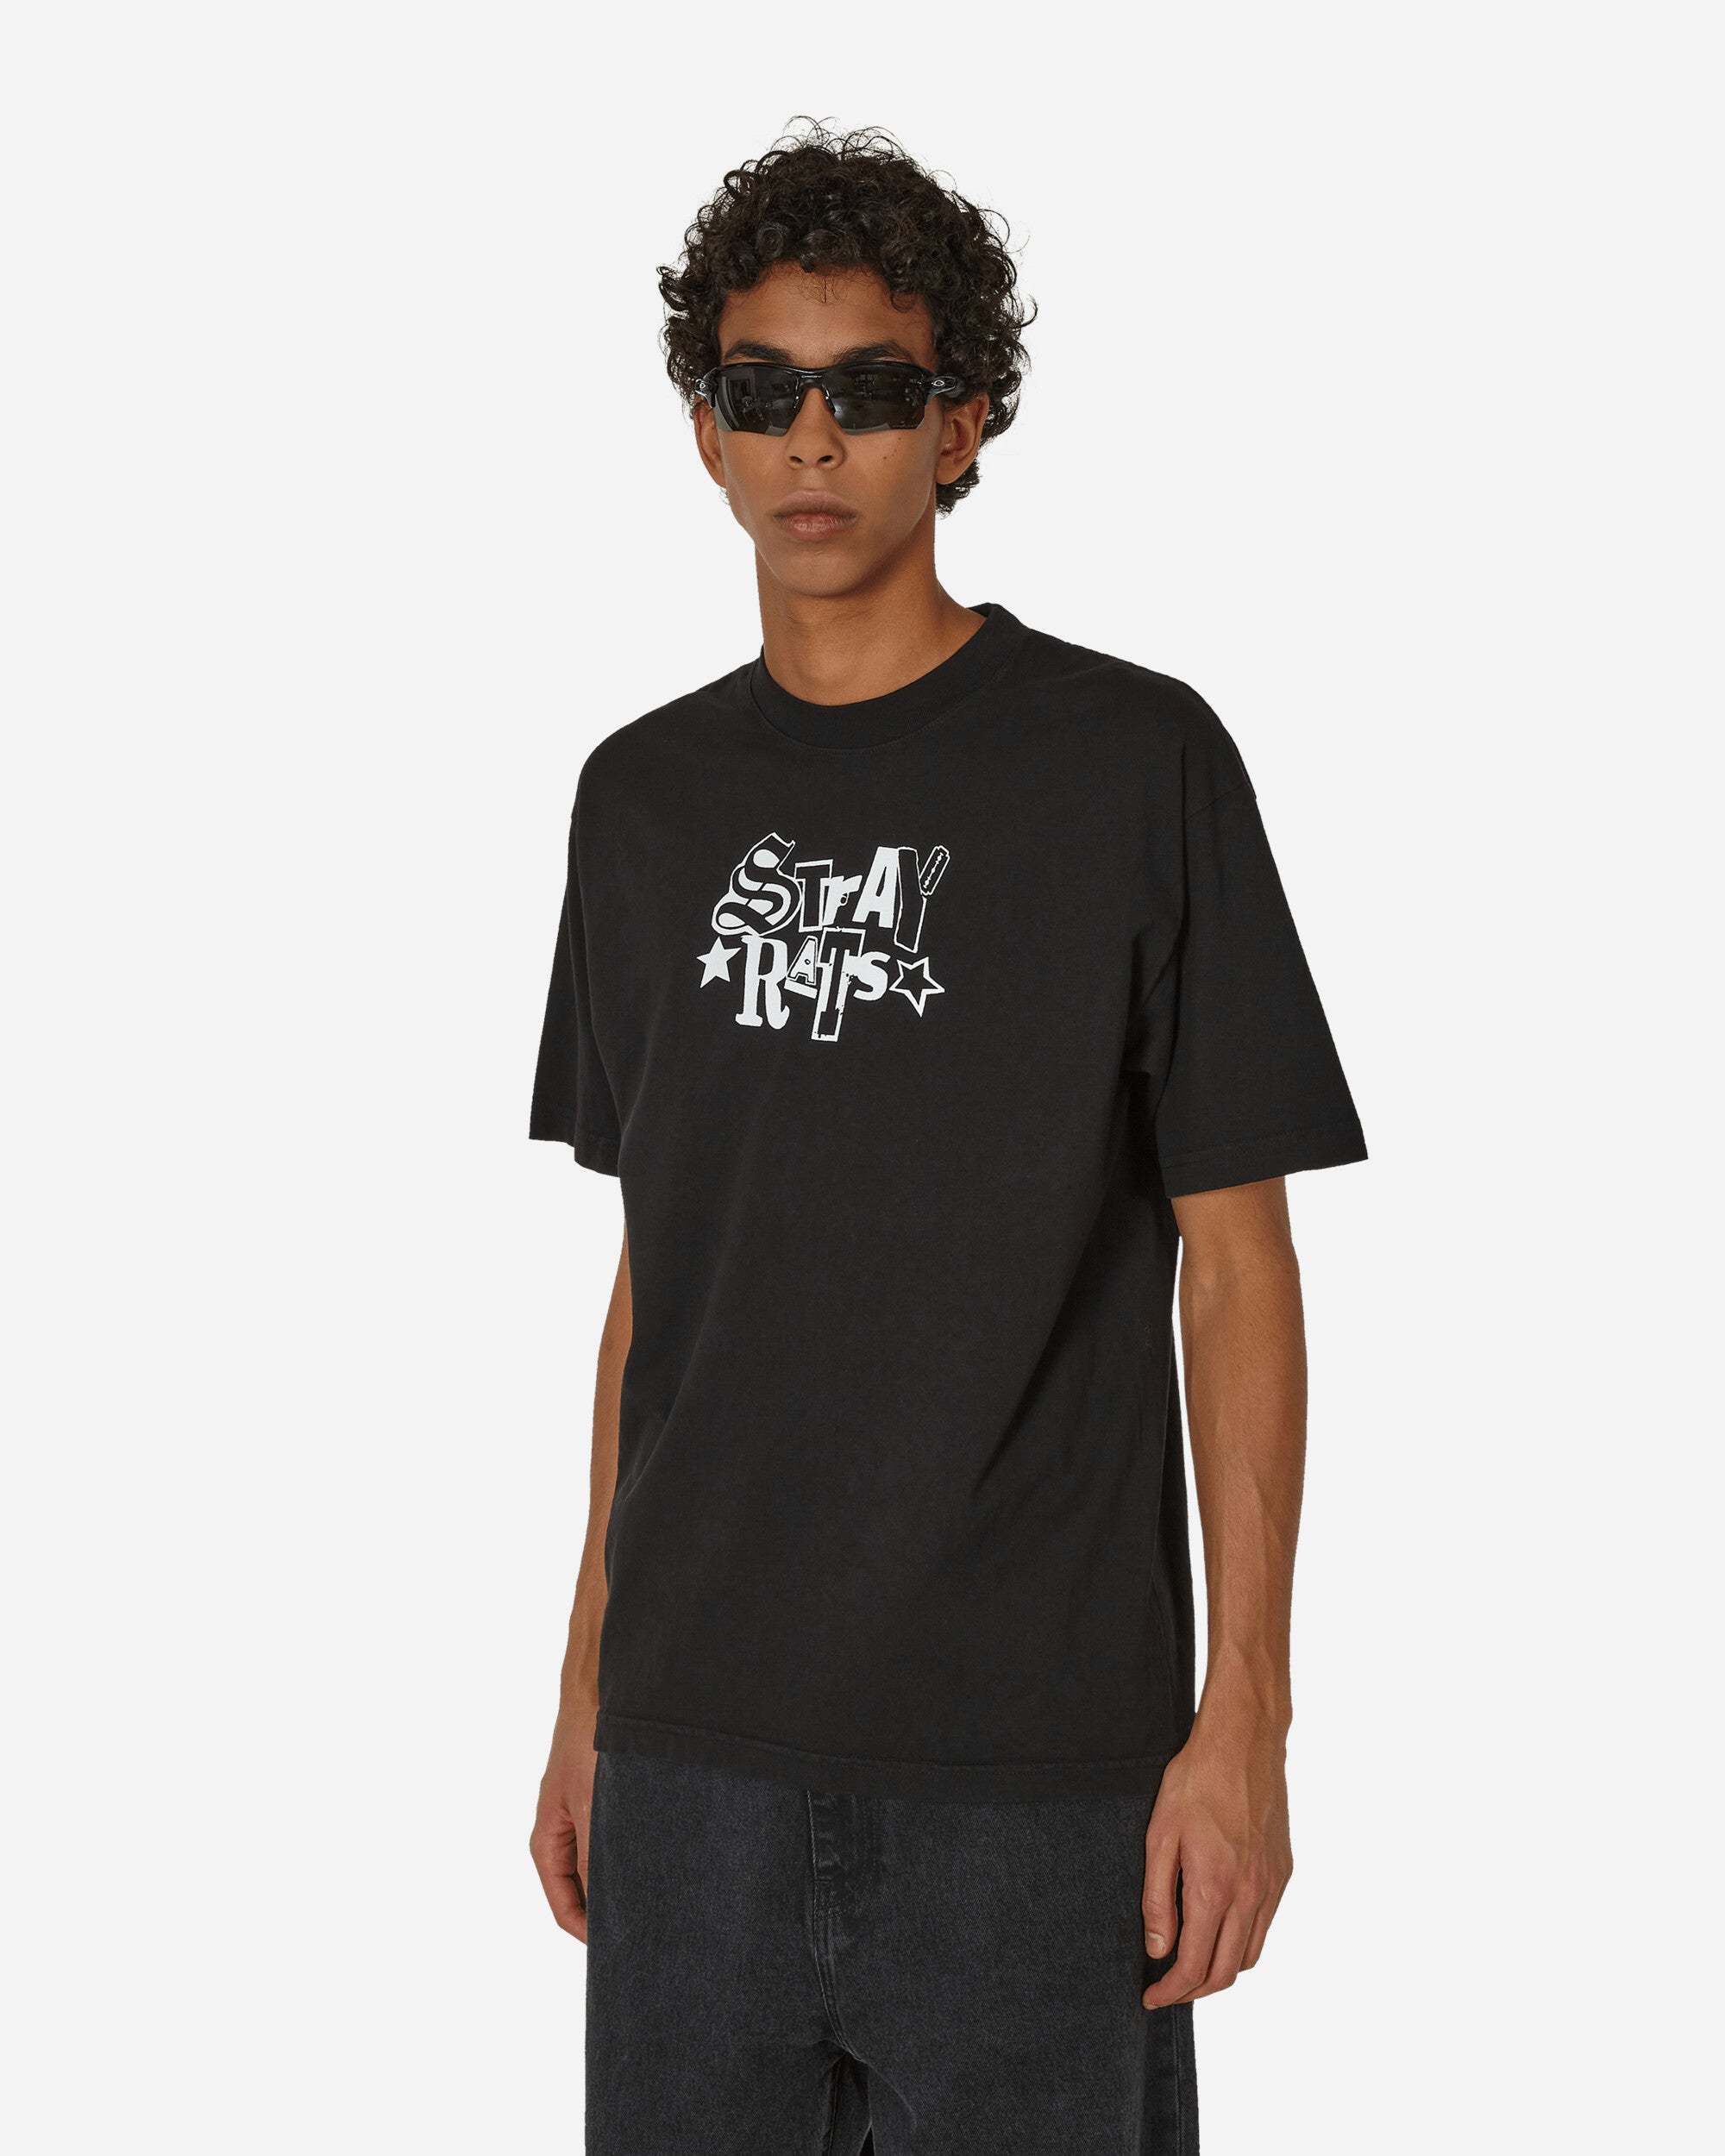 6,888円新品 Stray Rats Tee T-shirts Tシャツ XL